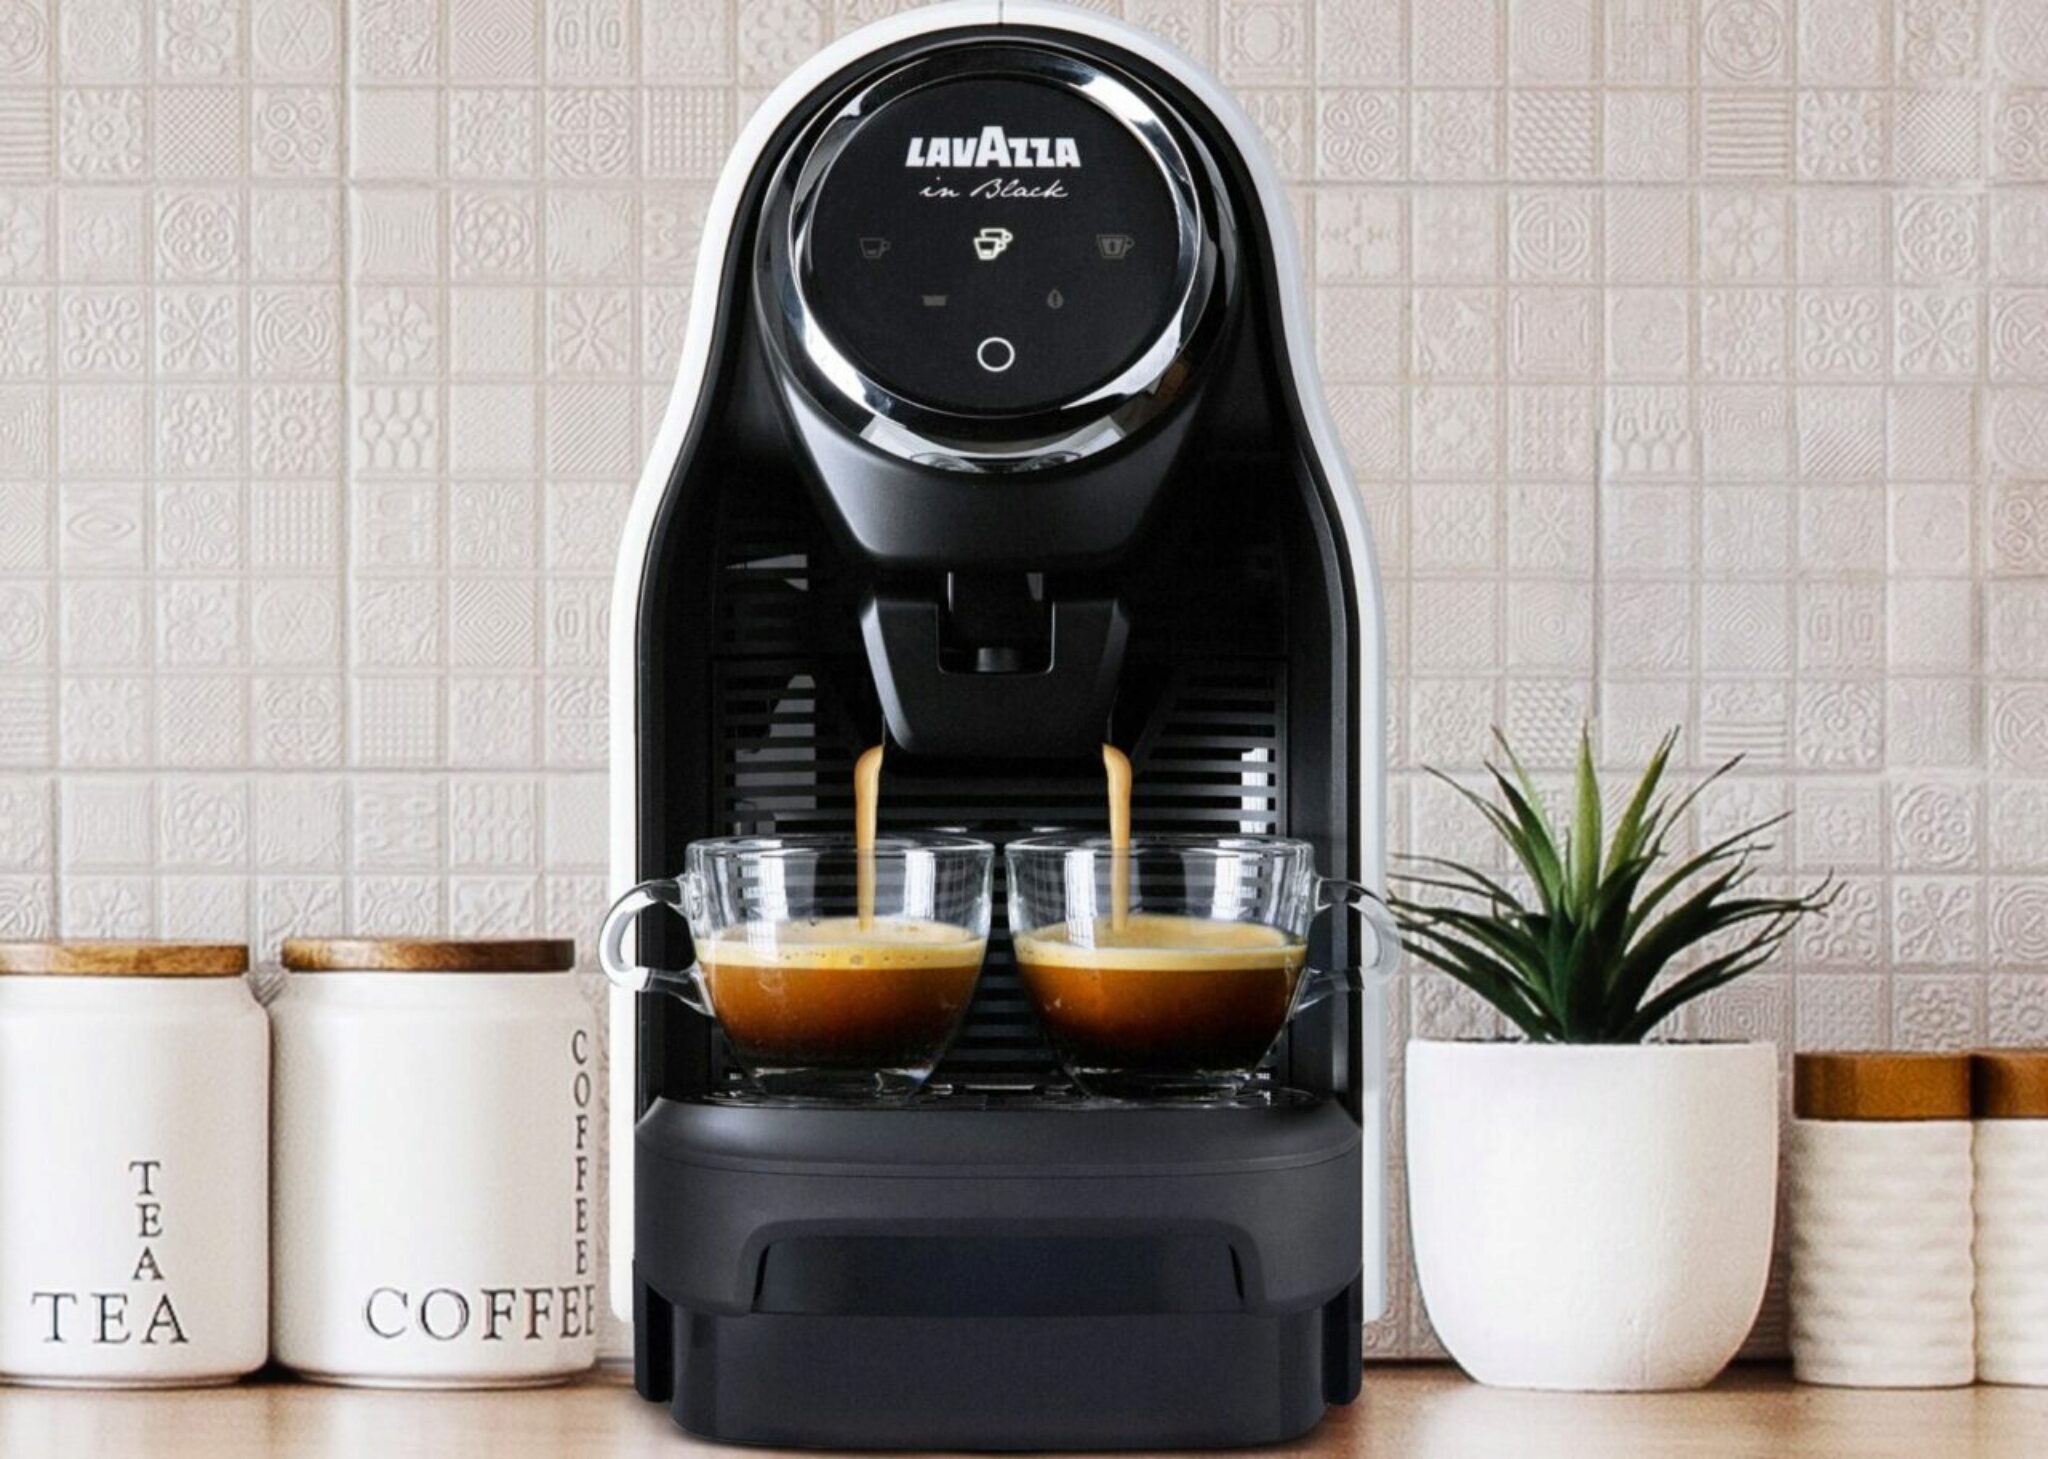 Le 5 Migliori App Per Il Caffe Che Ti Aiuteranno A Preparare Un Caffe Migliore